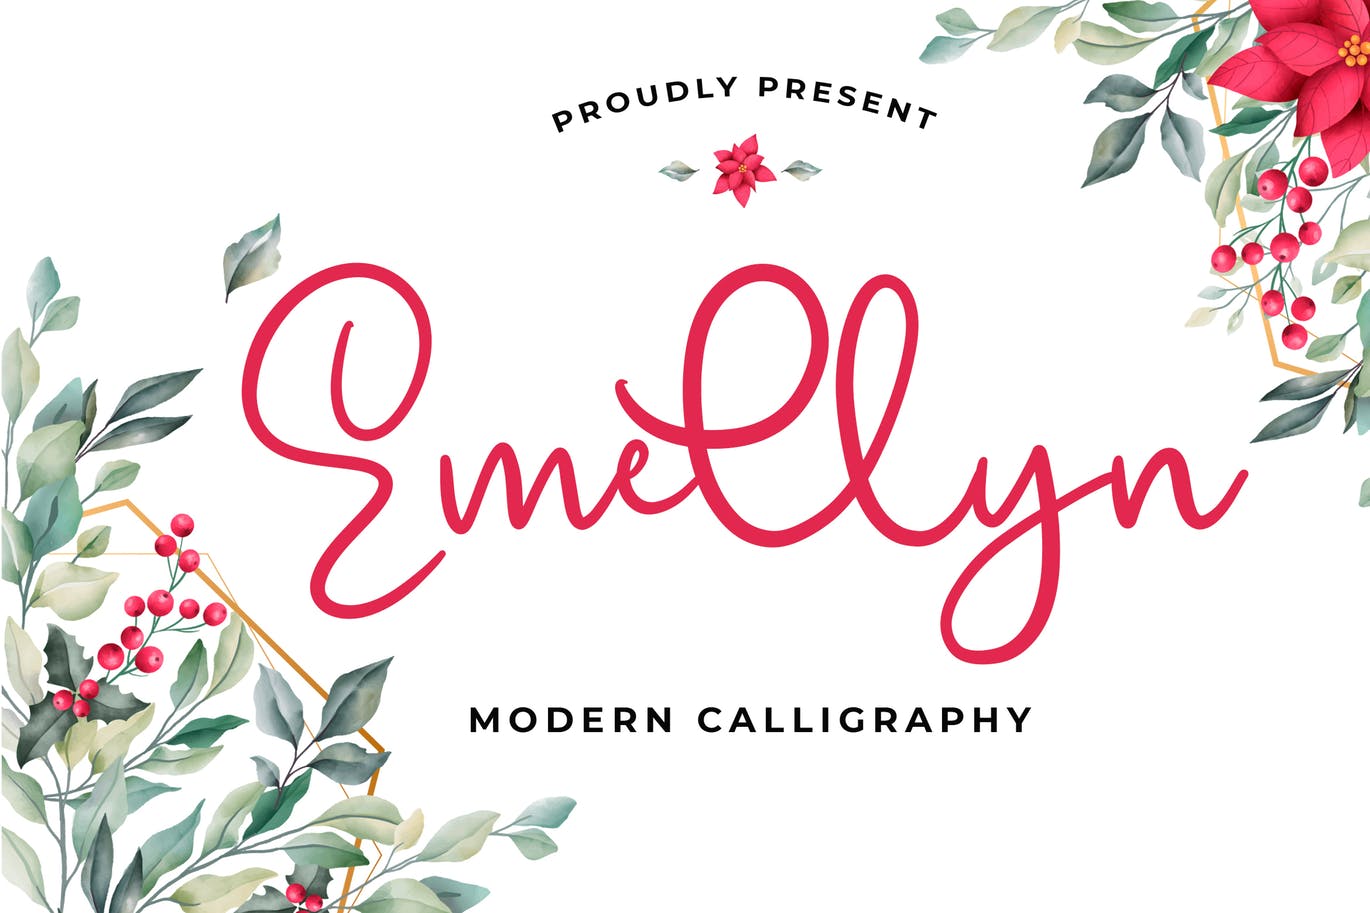 可爱风格英文现代书法字体大洋岛精选 Emellyn Lovely Modern Calligraphy Font插图